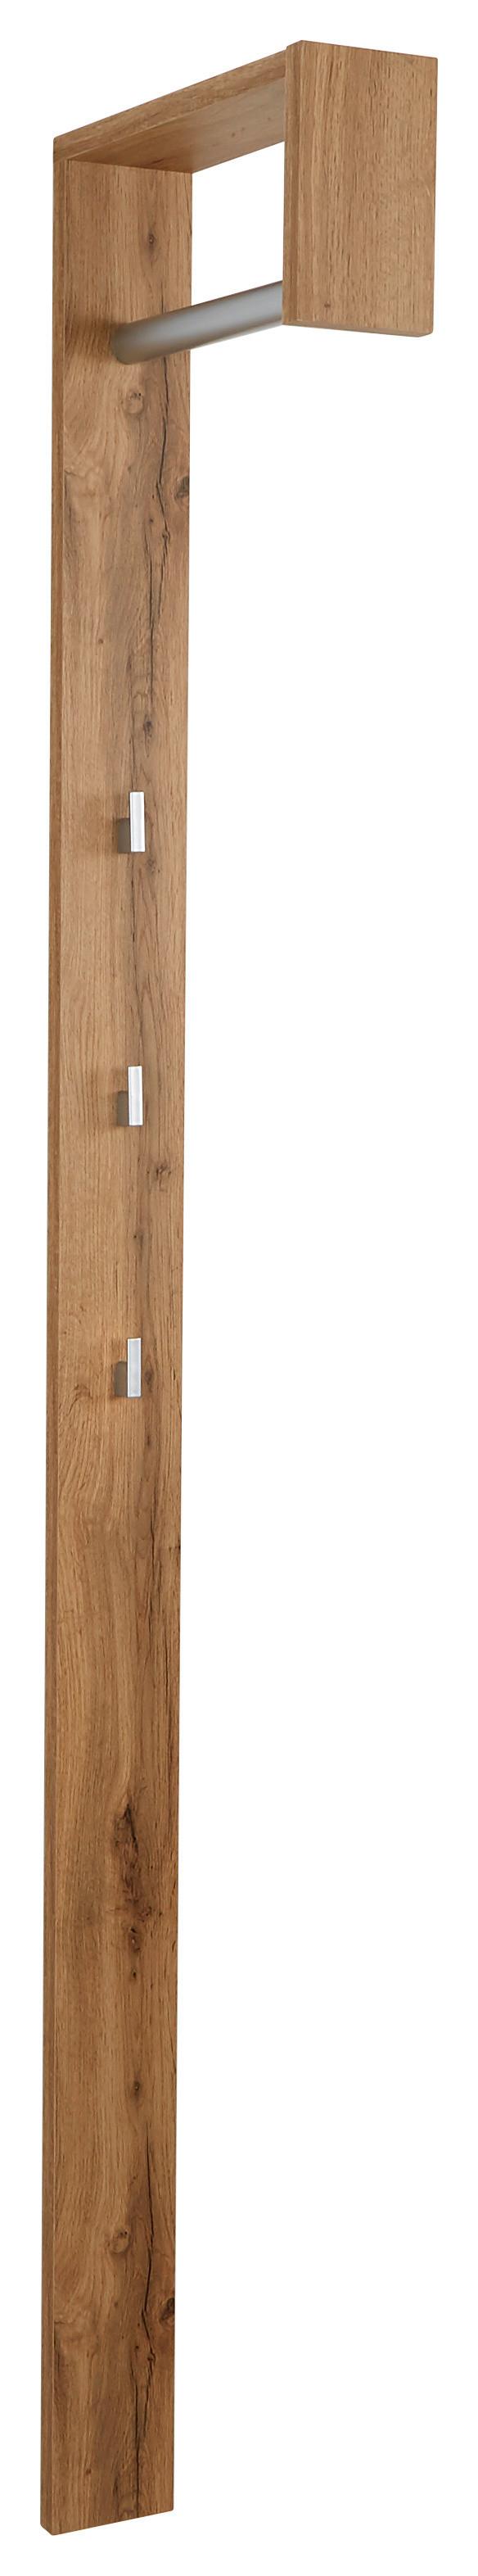 Šatní Panel Senex - barvy dubu, Moderní, dřevo (10/170/33cm)